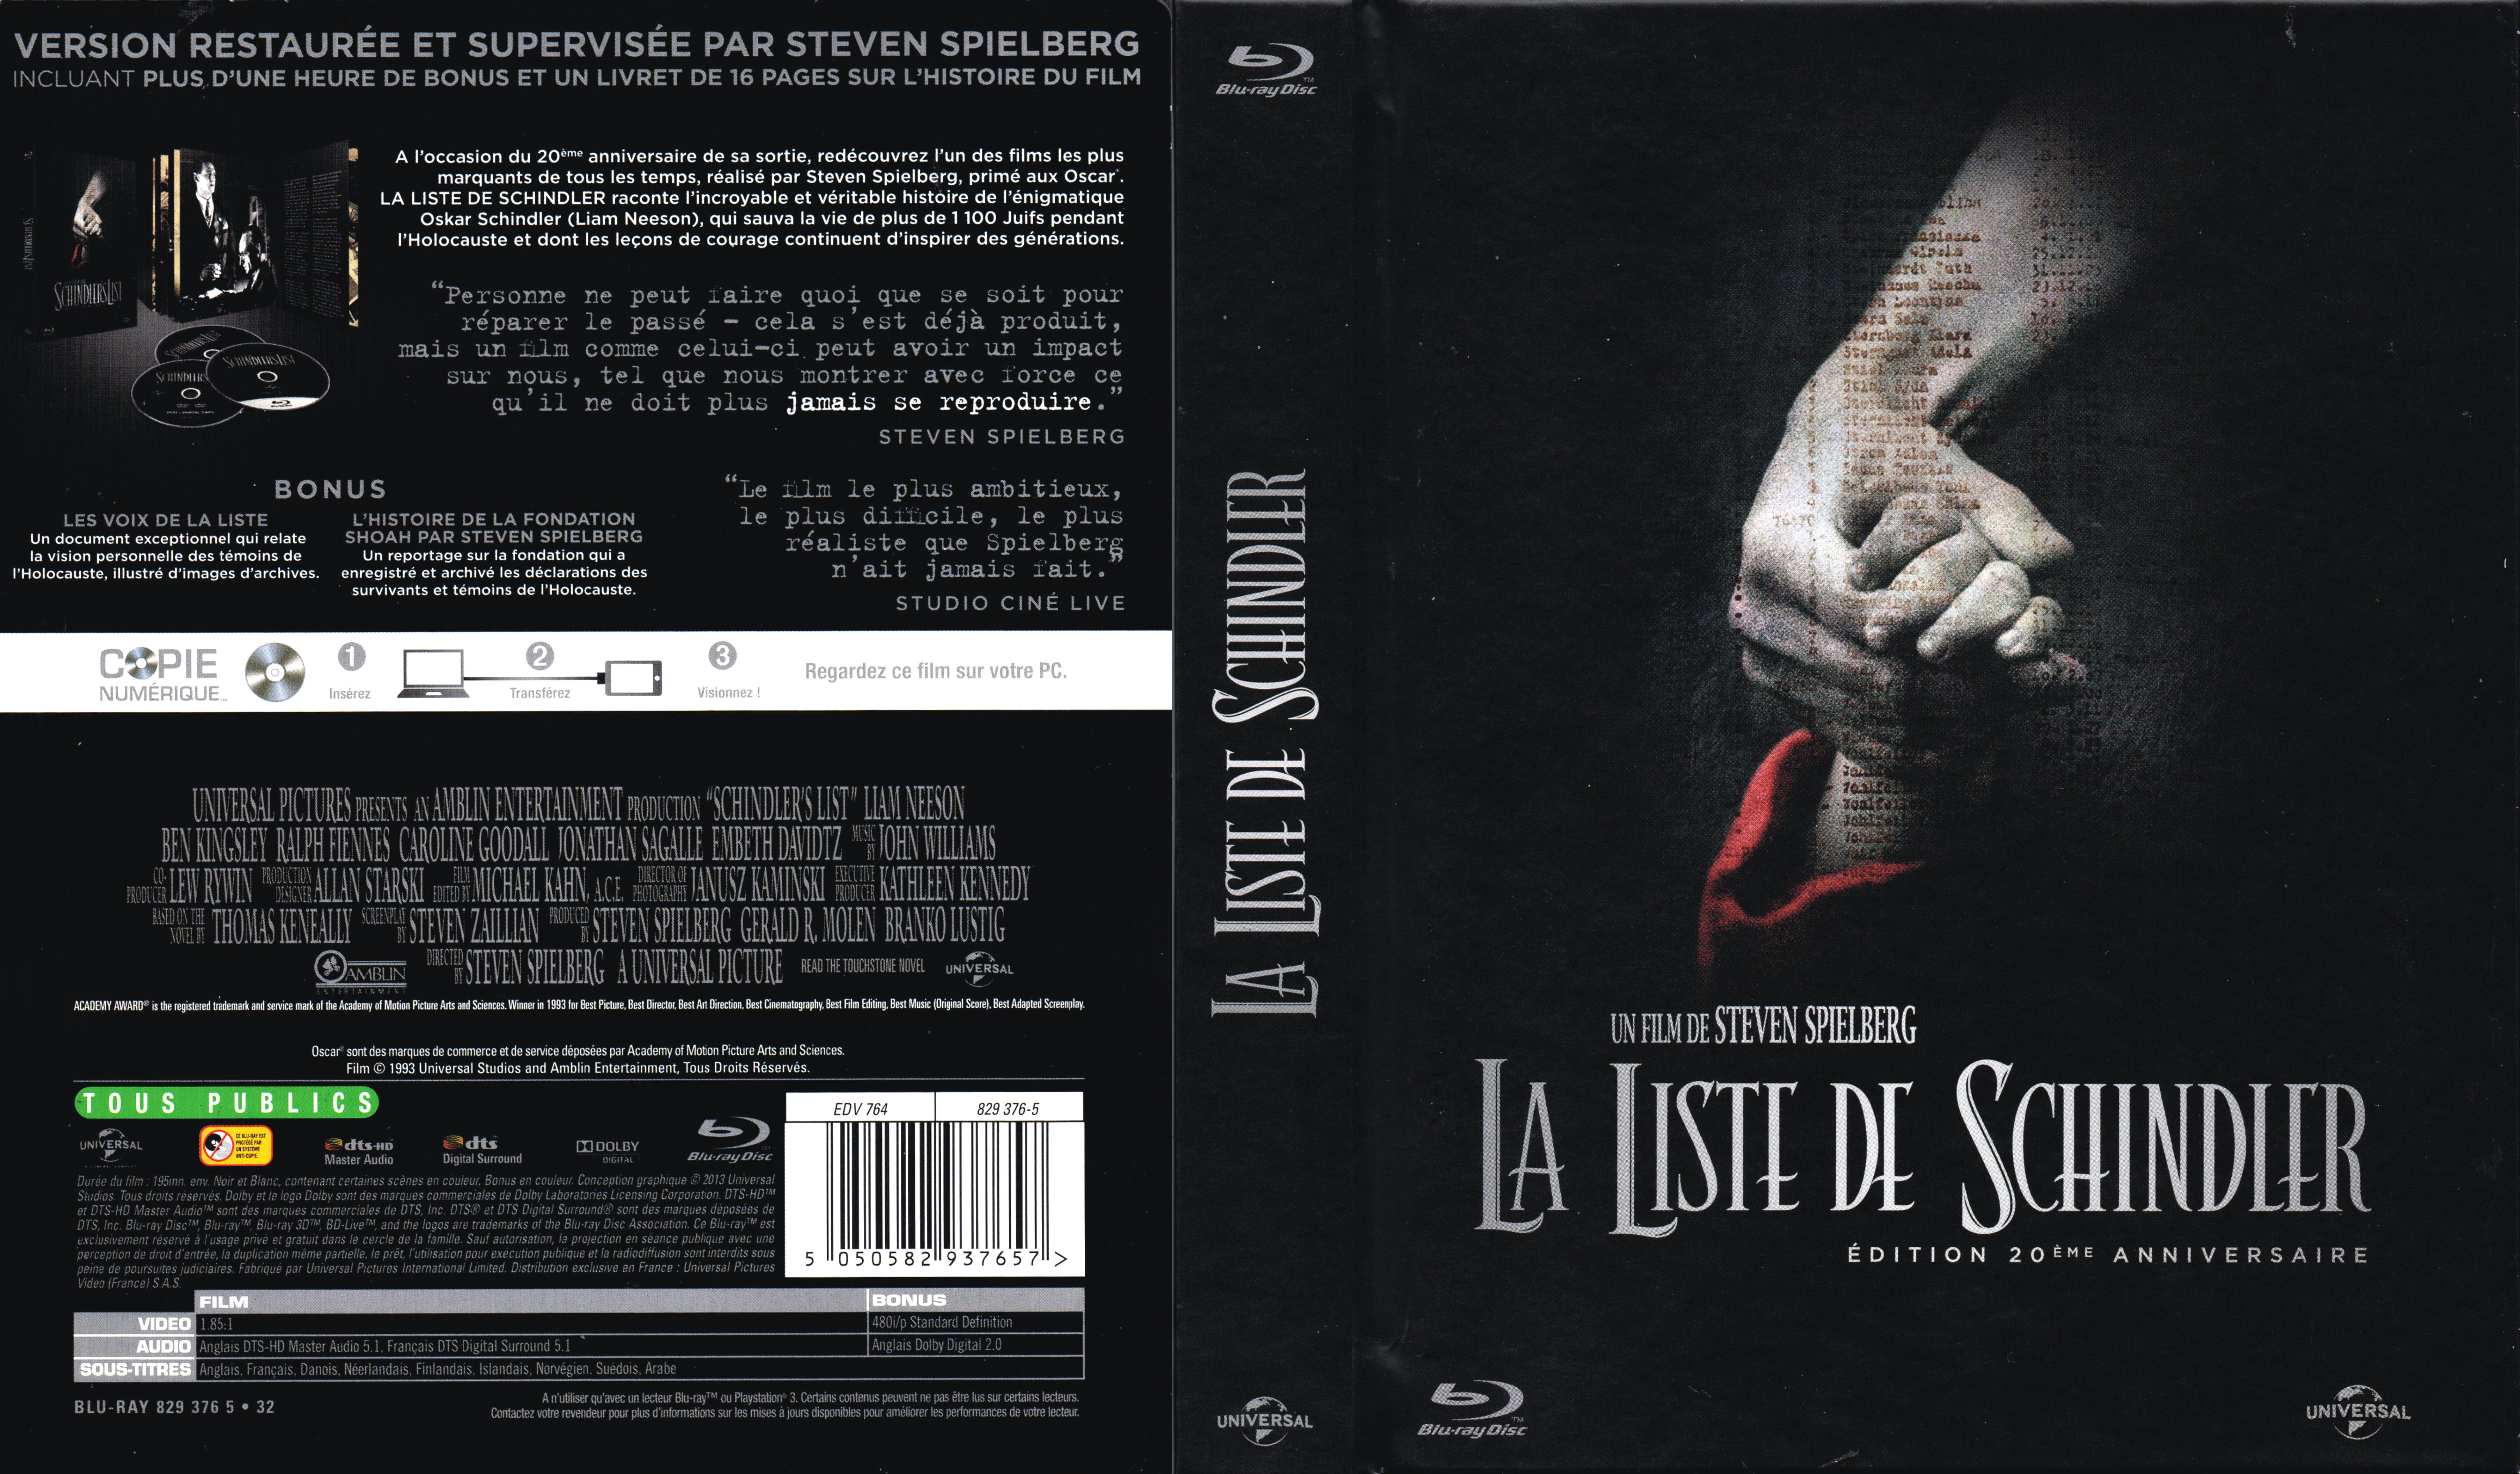 Jaquette DVD La liste de Schindler (BLU-RAY)